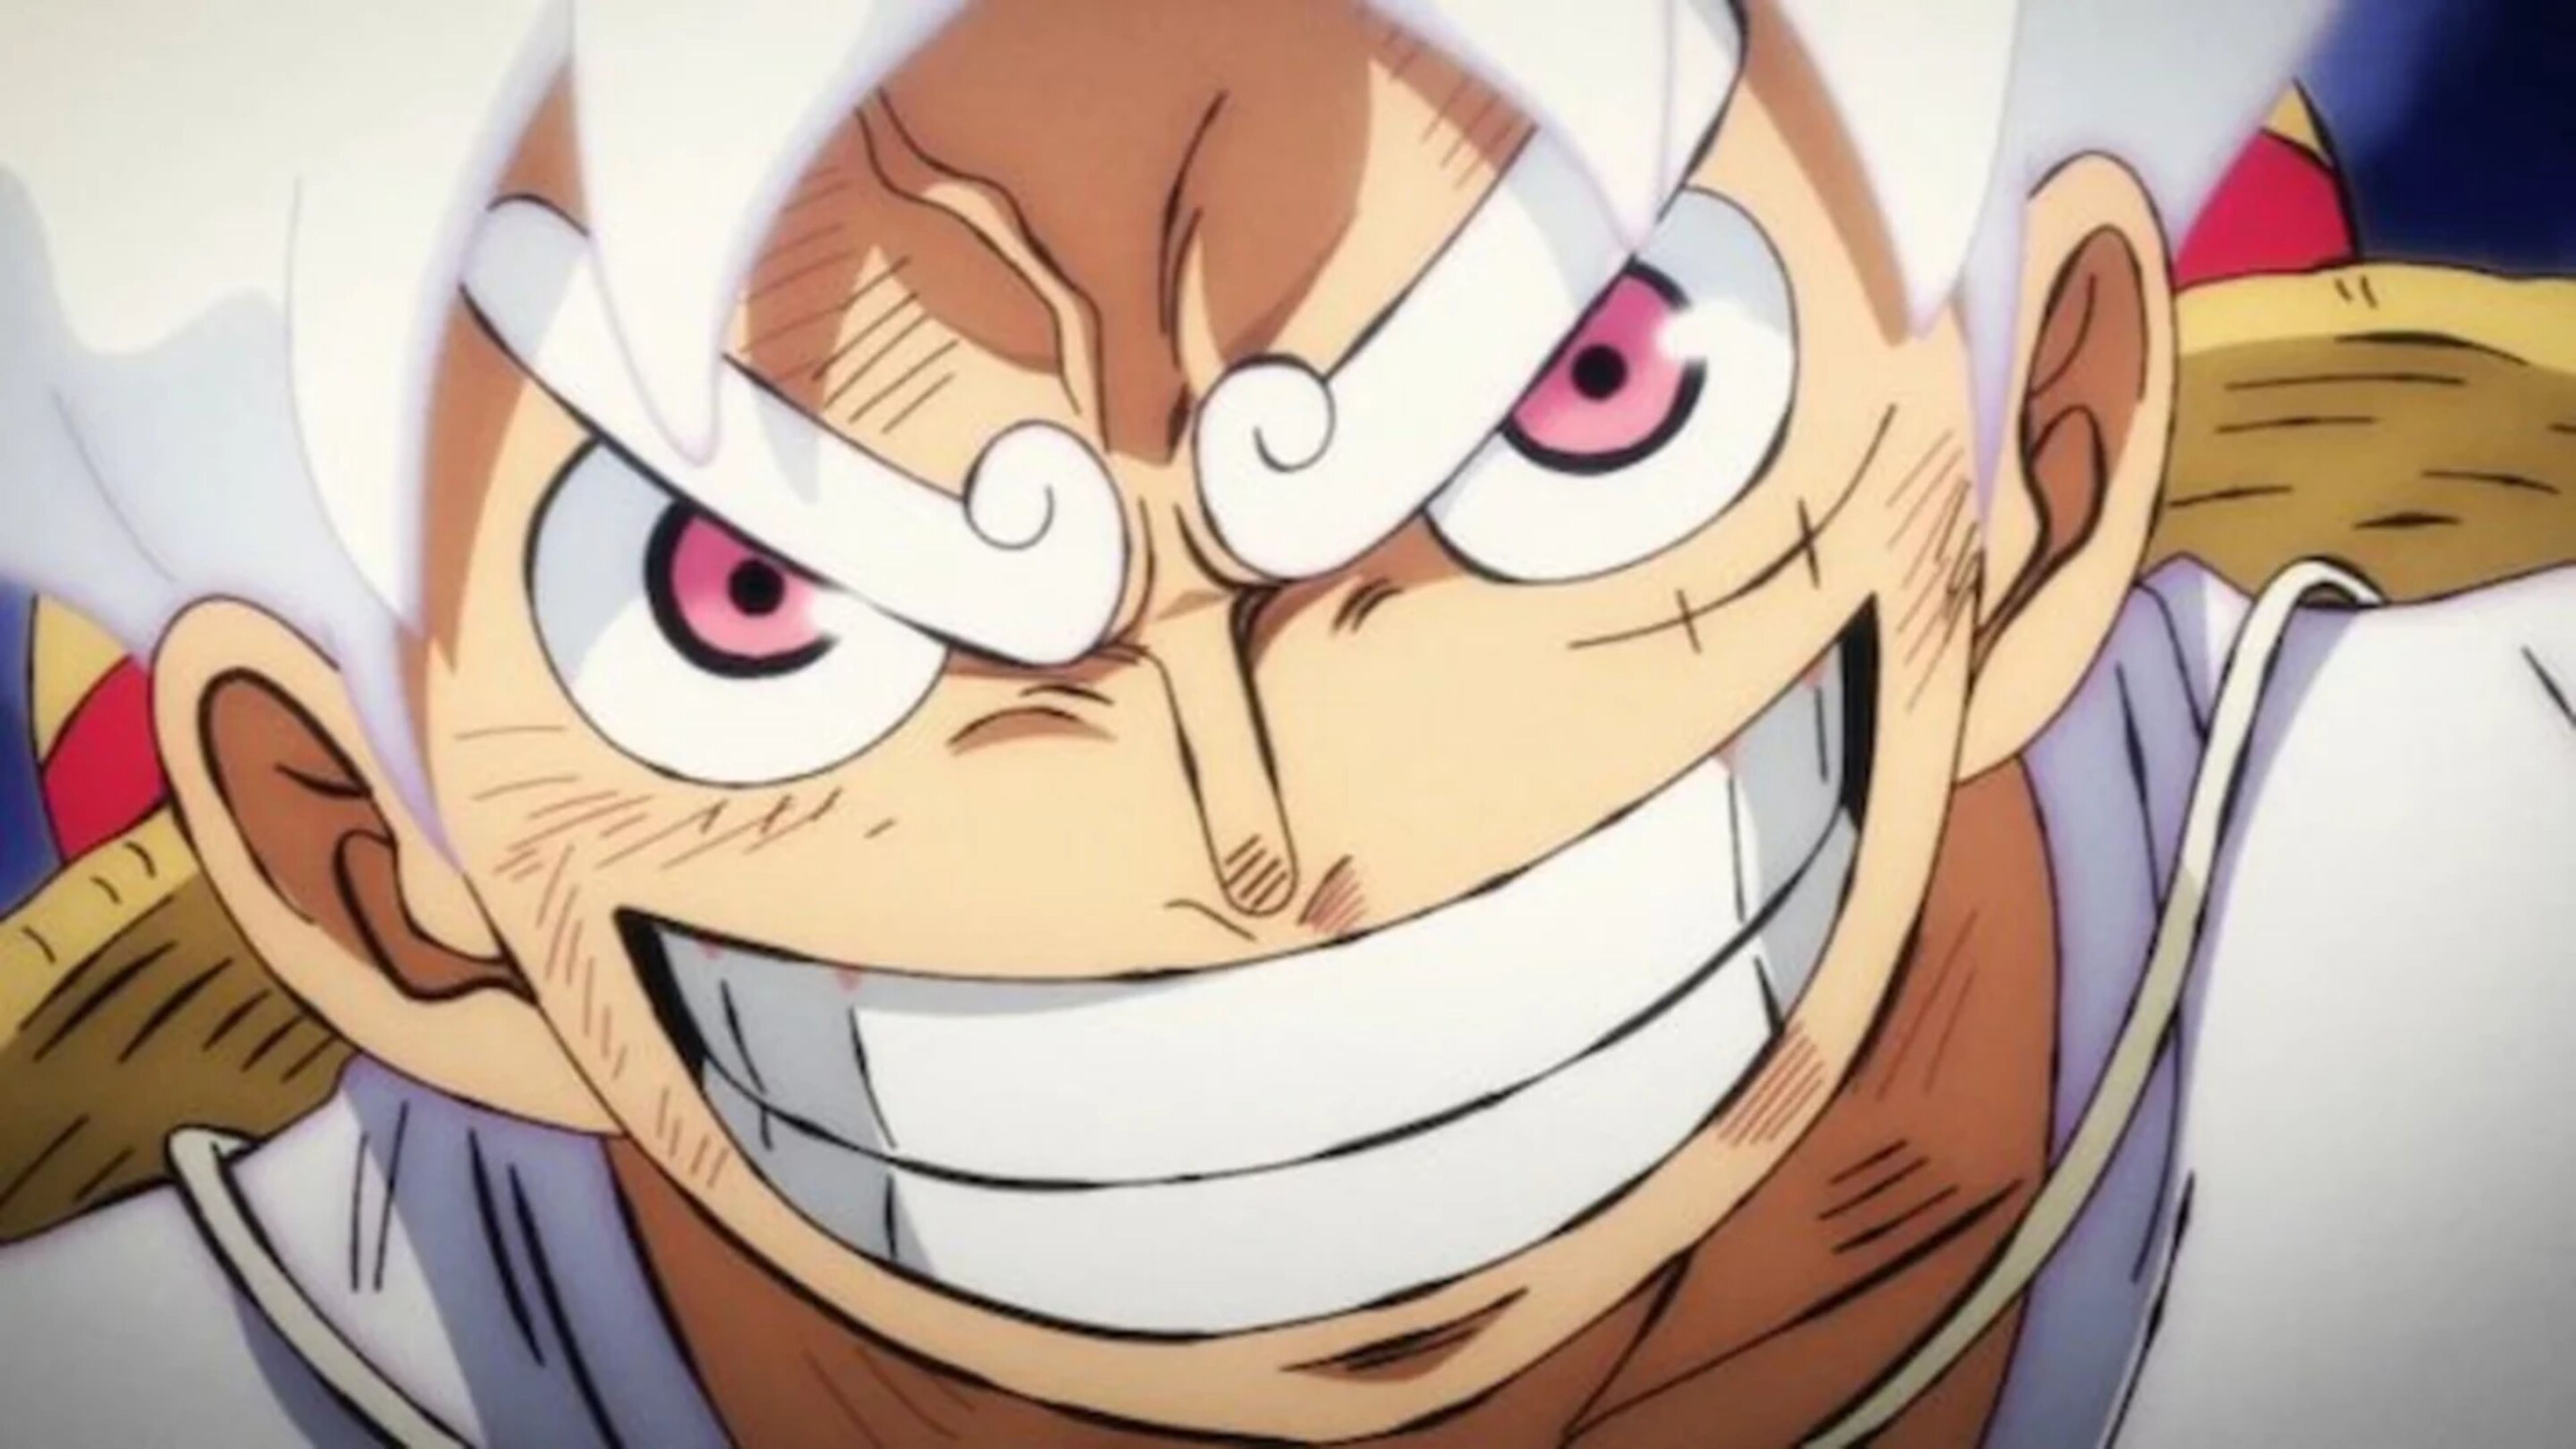 La nueva SH Figuarts de One Piece es impresionante y nos presenta a Luffy con su transformación más poderosa 